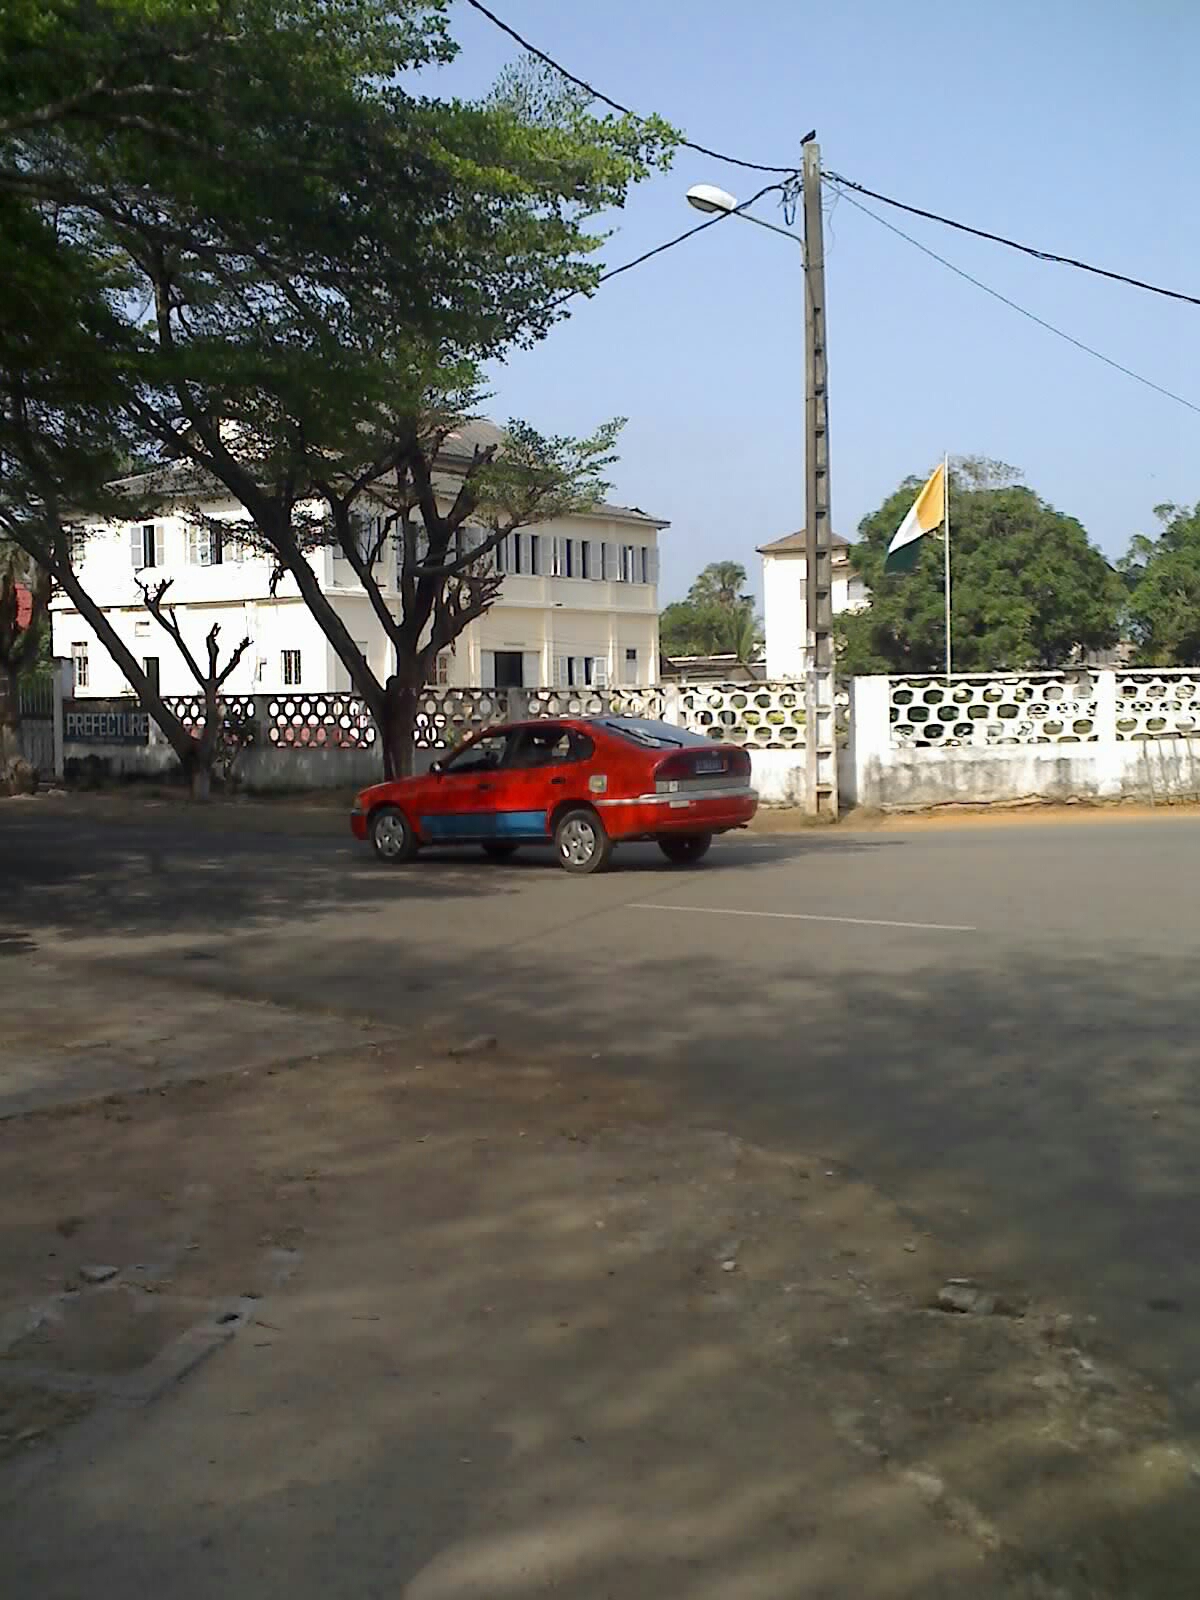 Typisches ivoirisches Taxi vor einem Regierungsgebäude